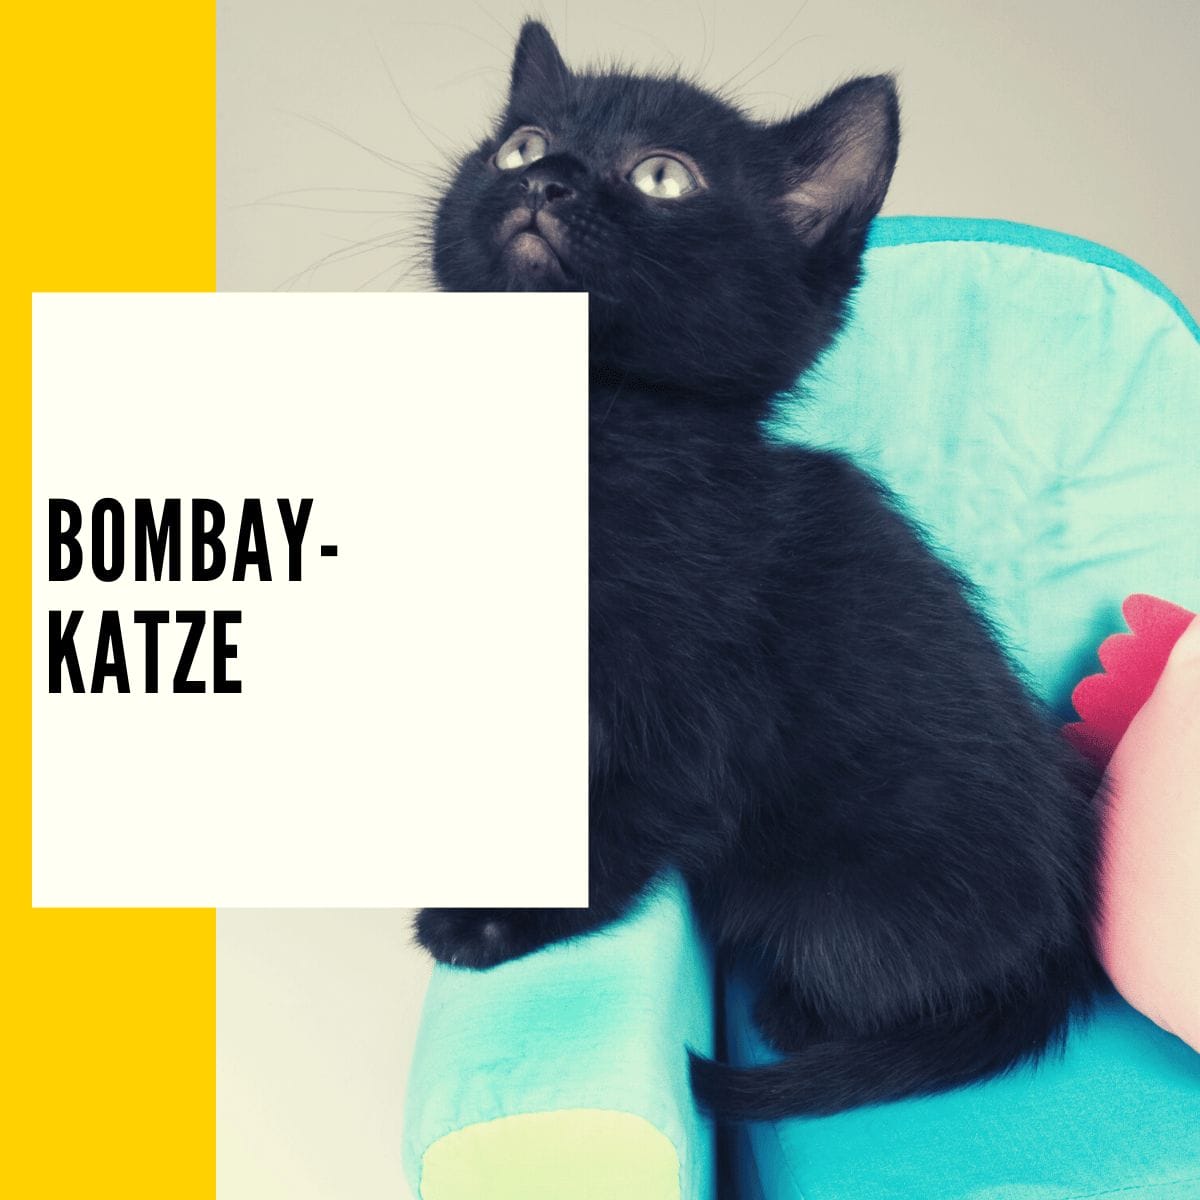 Die Bombay-Katze ist dank Ihrer Größe ideal für eine Wohnung oder einen Ort mit relativ wenig Platz geeignet.